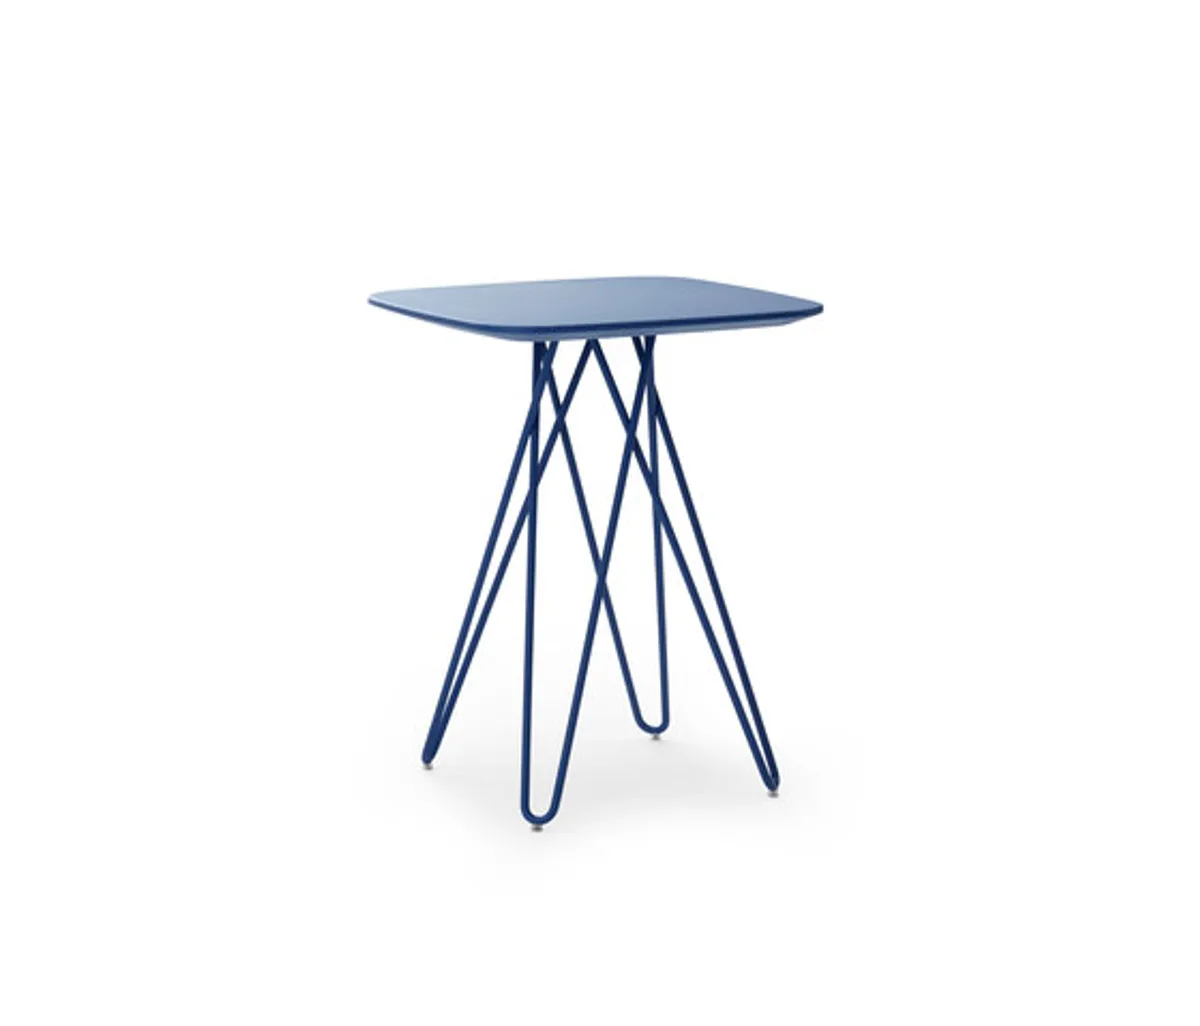 Tisch "Cimber" von Leolux